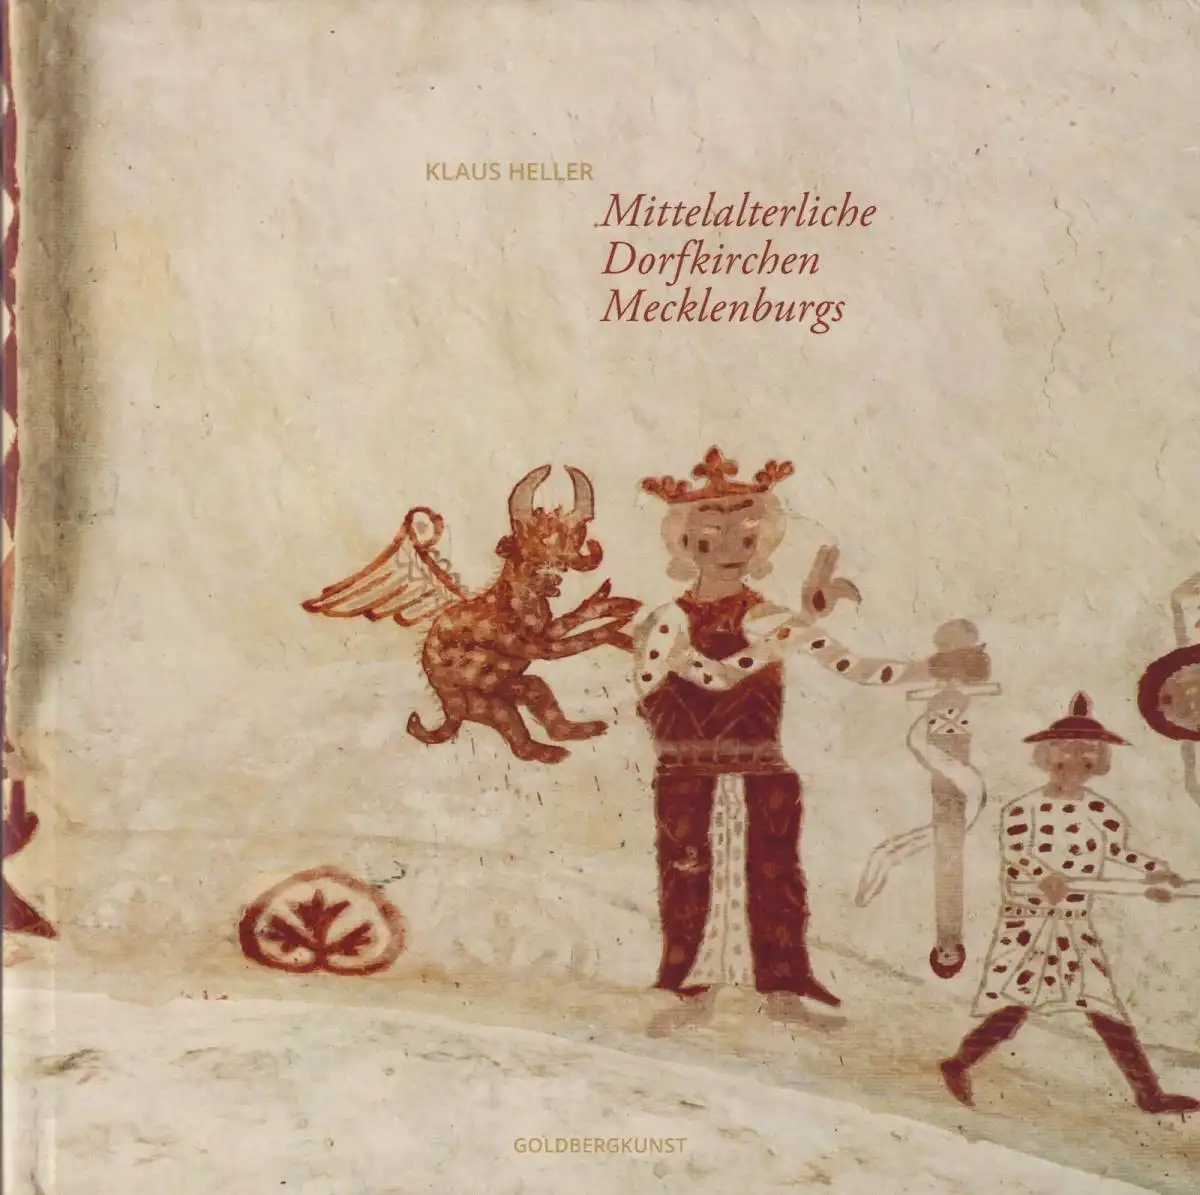 Buch: Mittelalterliche Dorfkirchen Mecklenburgs, Heller, Klaus, 2019